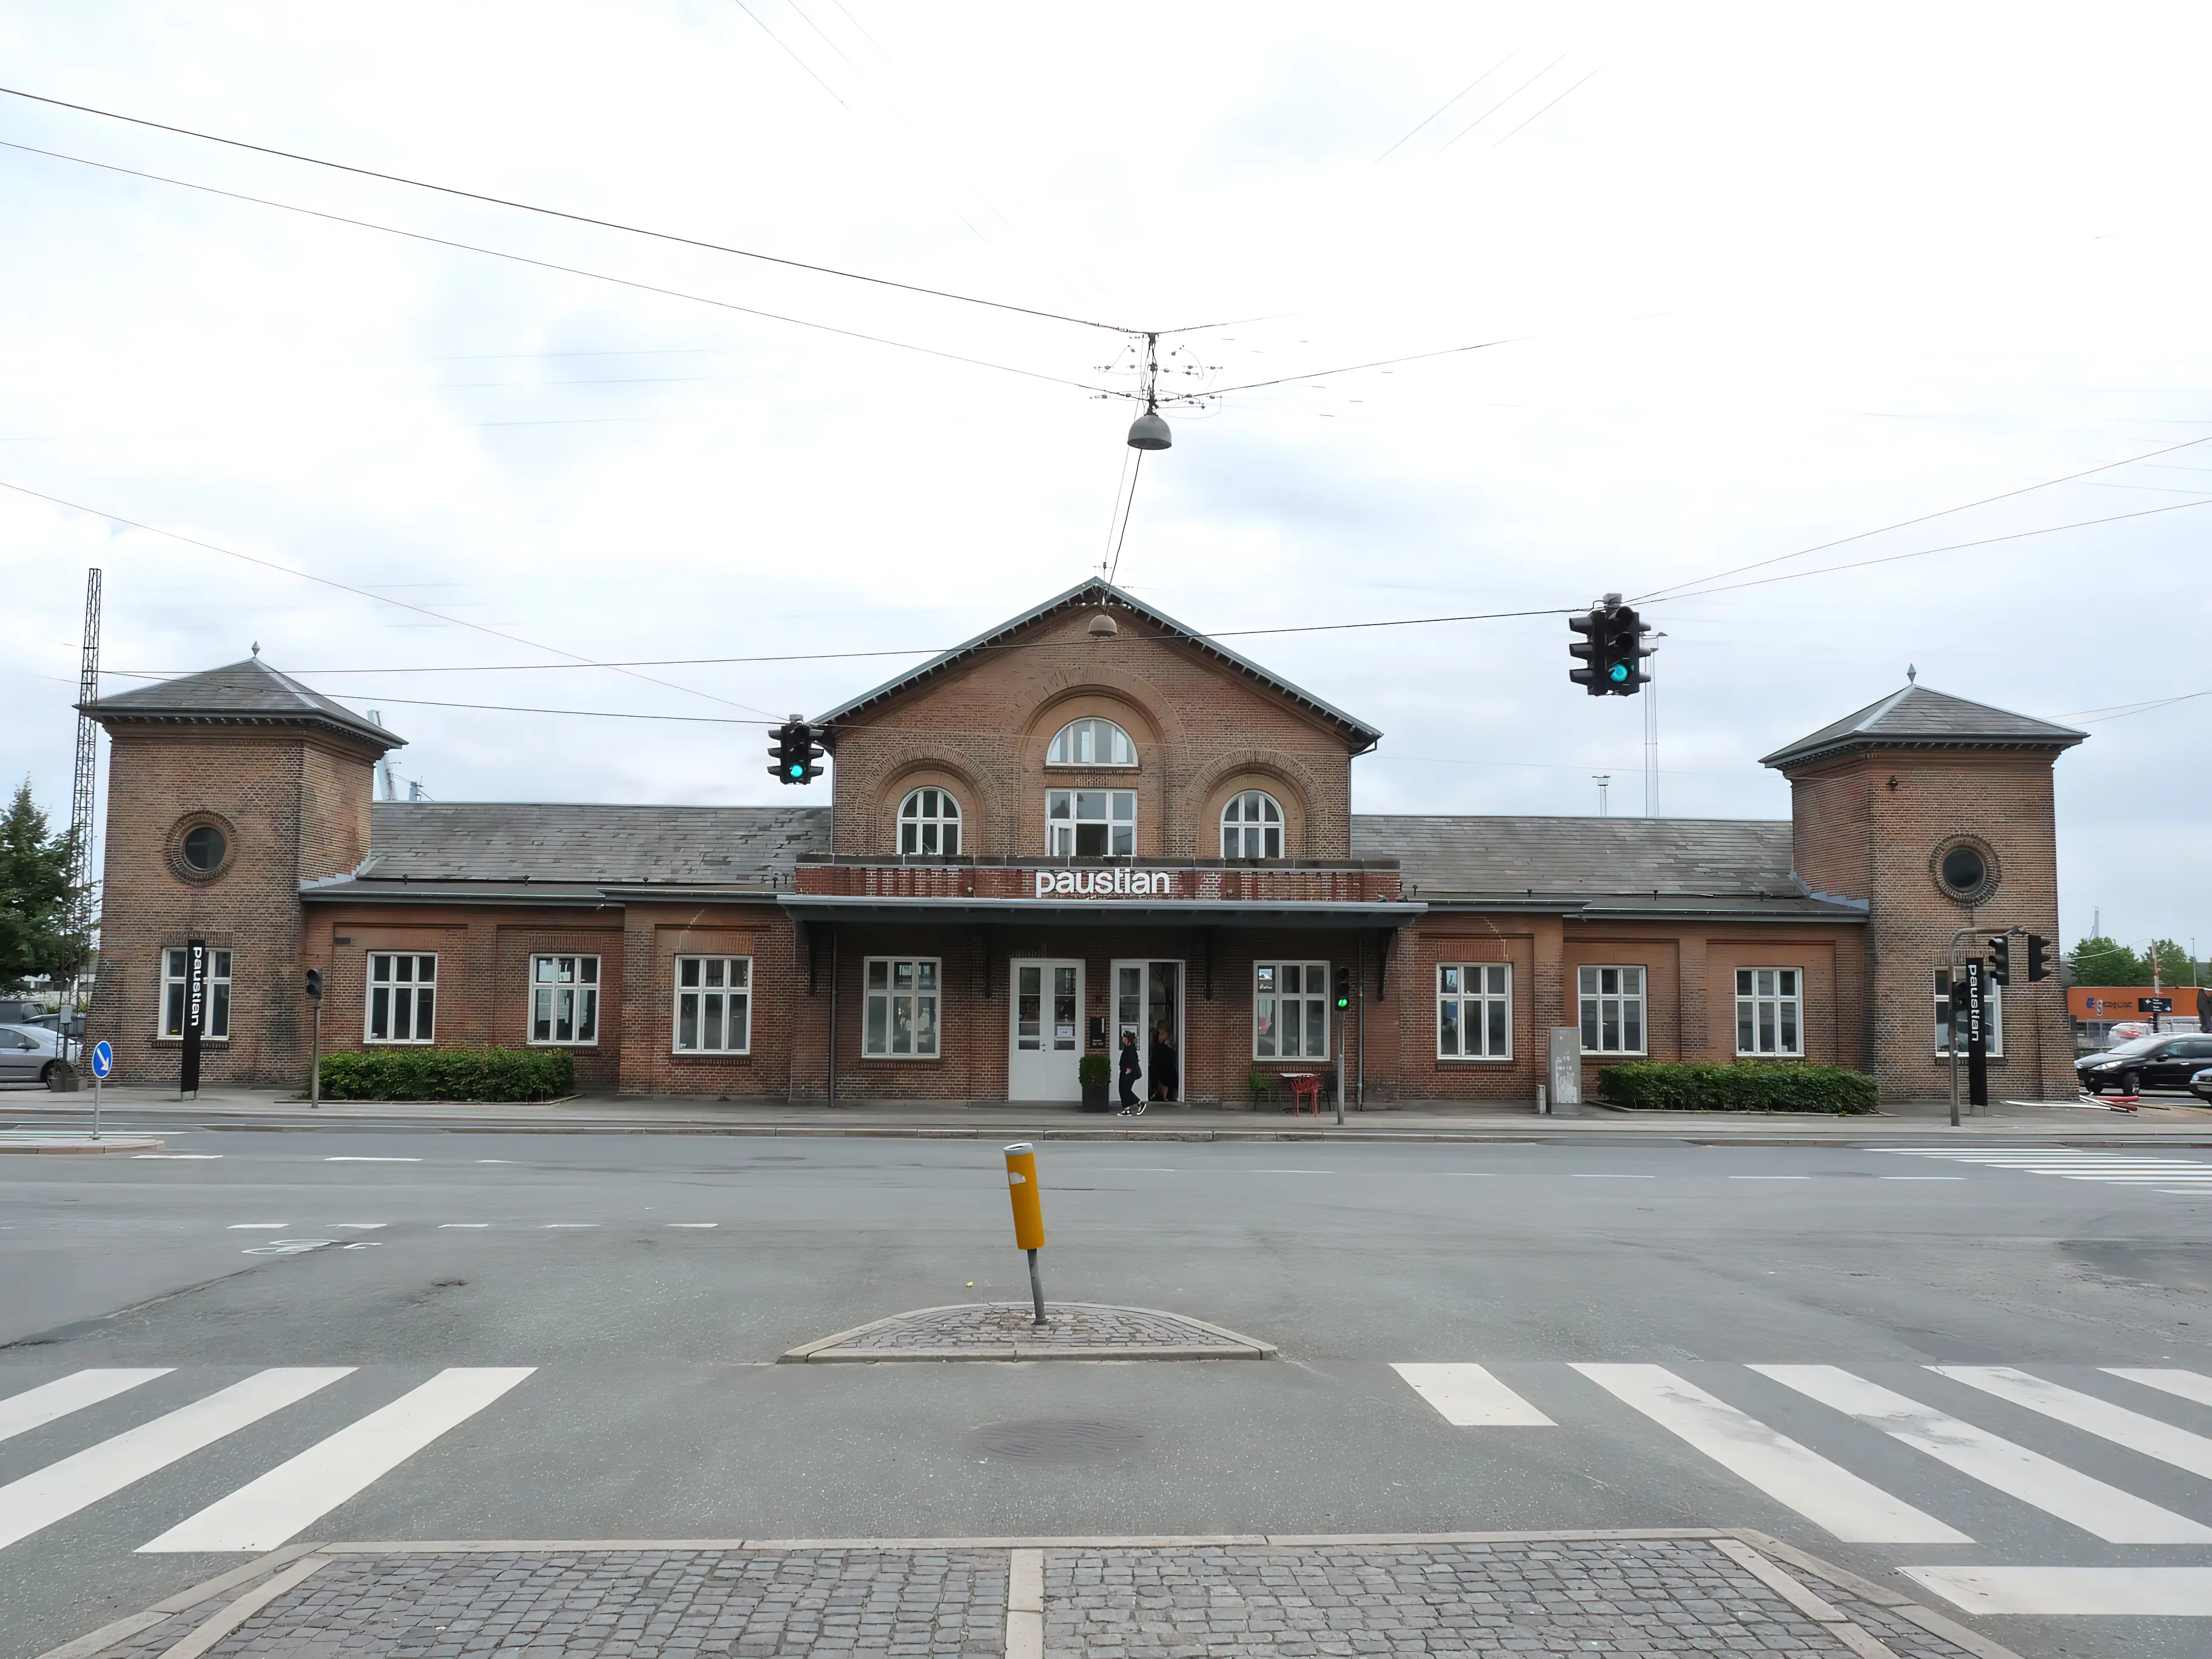 Østbanetorvet Station.